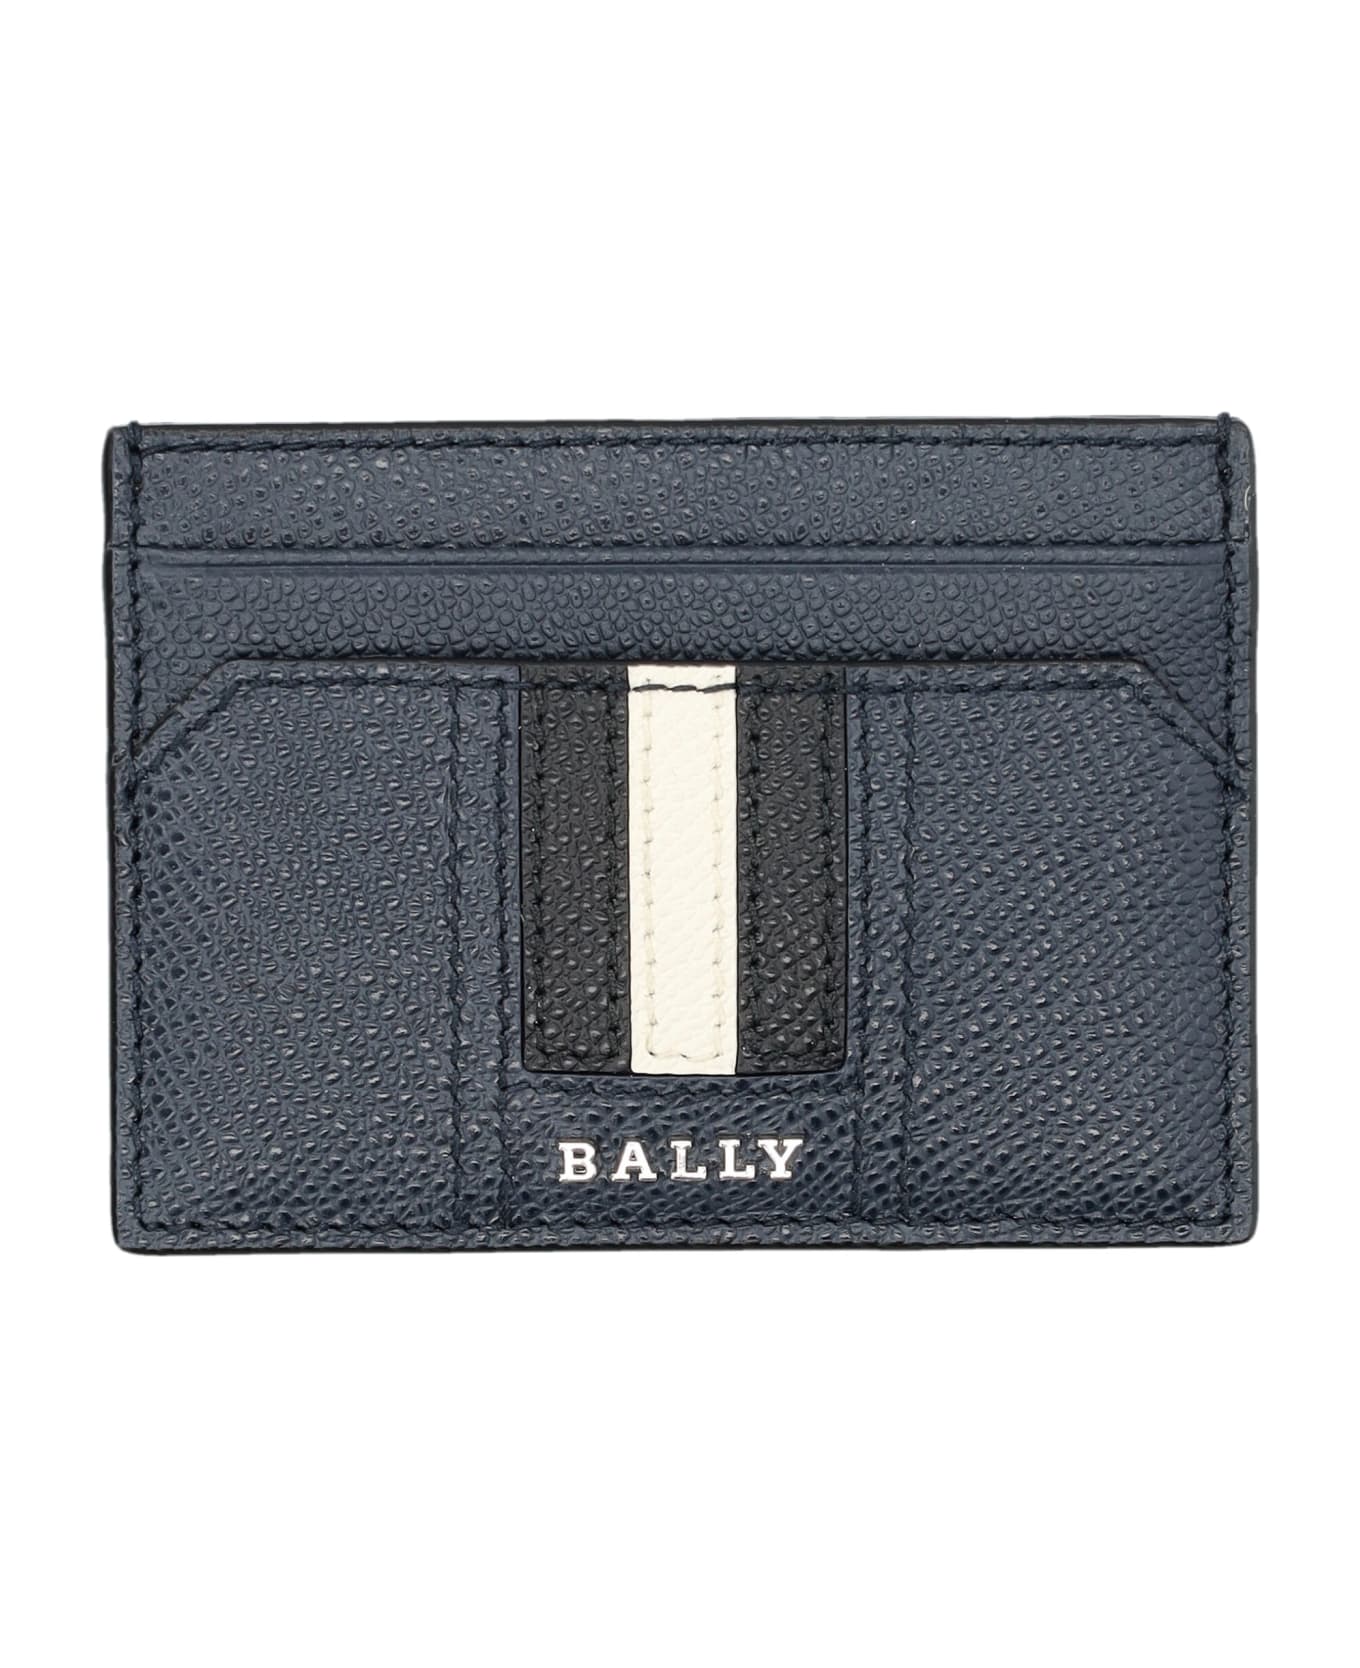 Bally Thar Lt Cardholder - NEW BLUE